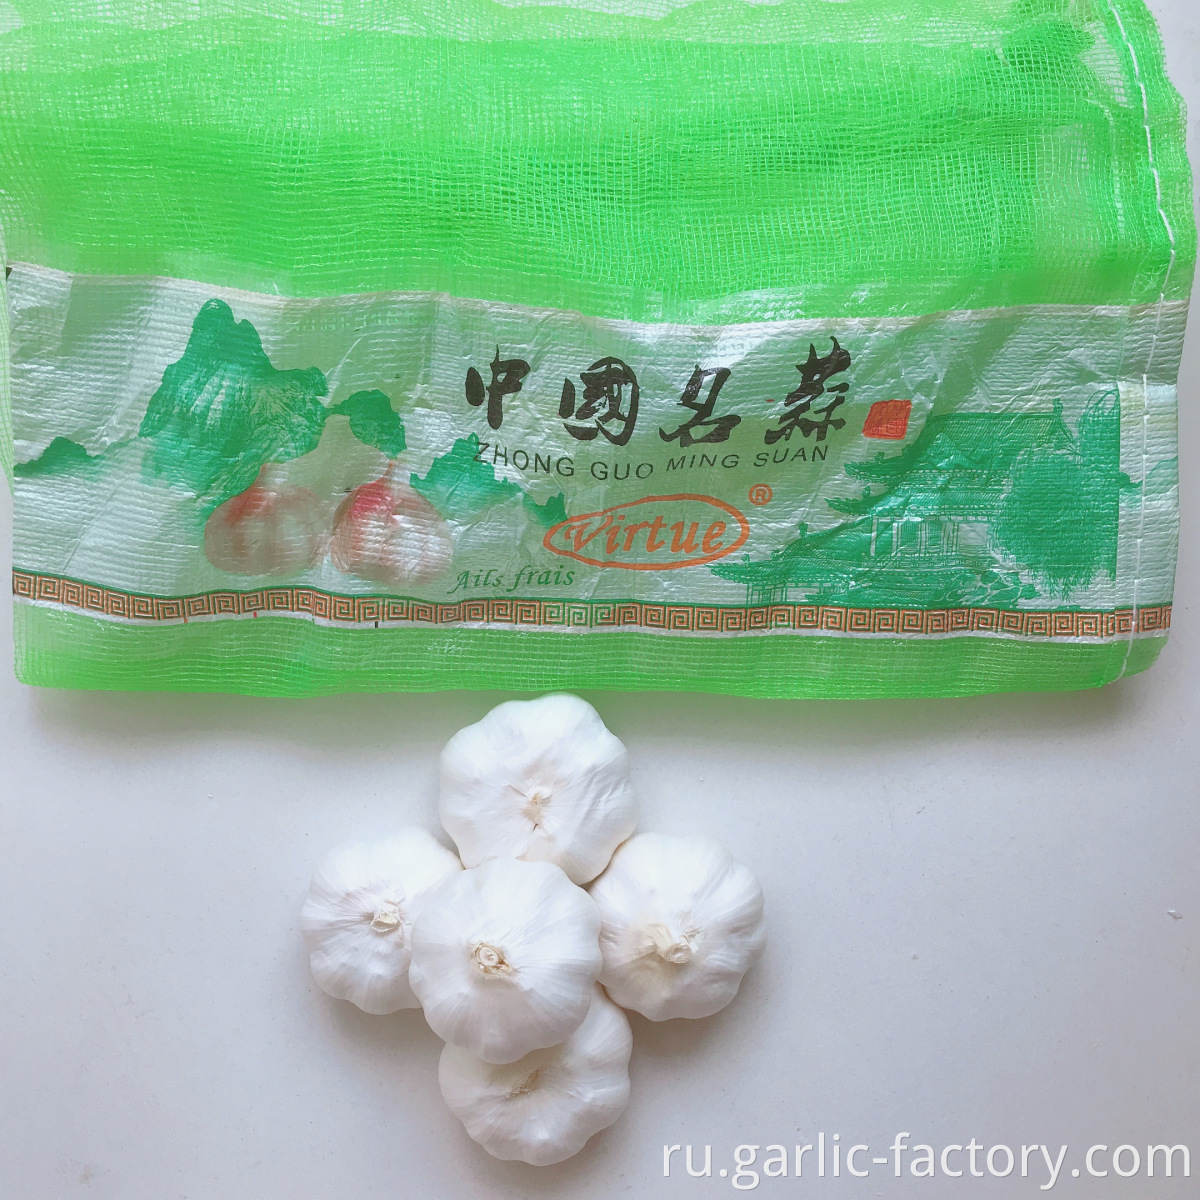 NEW Fresh Jin xiang 5p Garlic